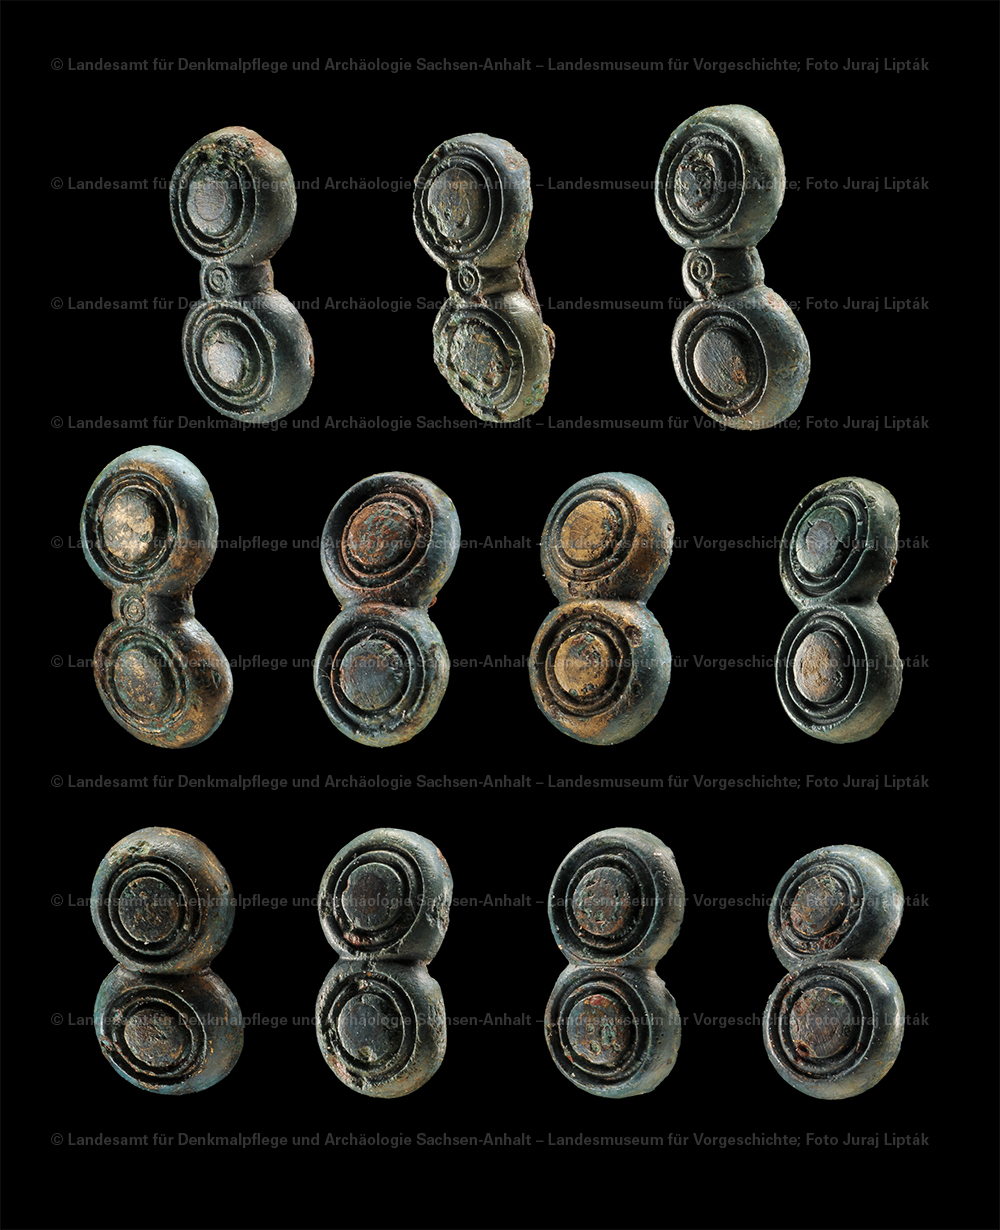 Elf bronzene Gurt- und Riemenbeschläge aus Grab 6/1940 von Bornitz, Burgenlandkreis (Landesamt für Denkmalpflege und Archäologie Sachsen-Anhalt - Landesmuseum für Vorgeschichte RR-F)